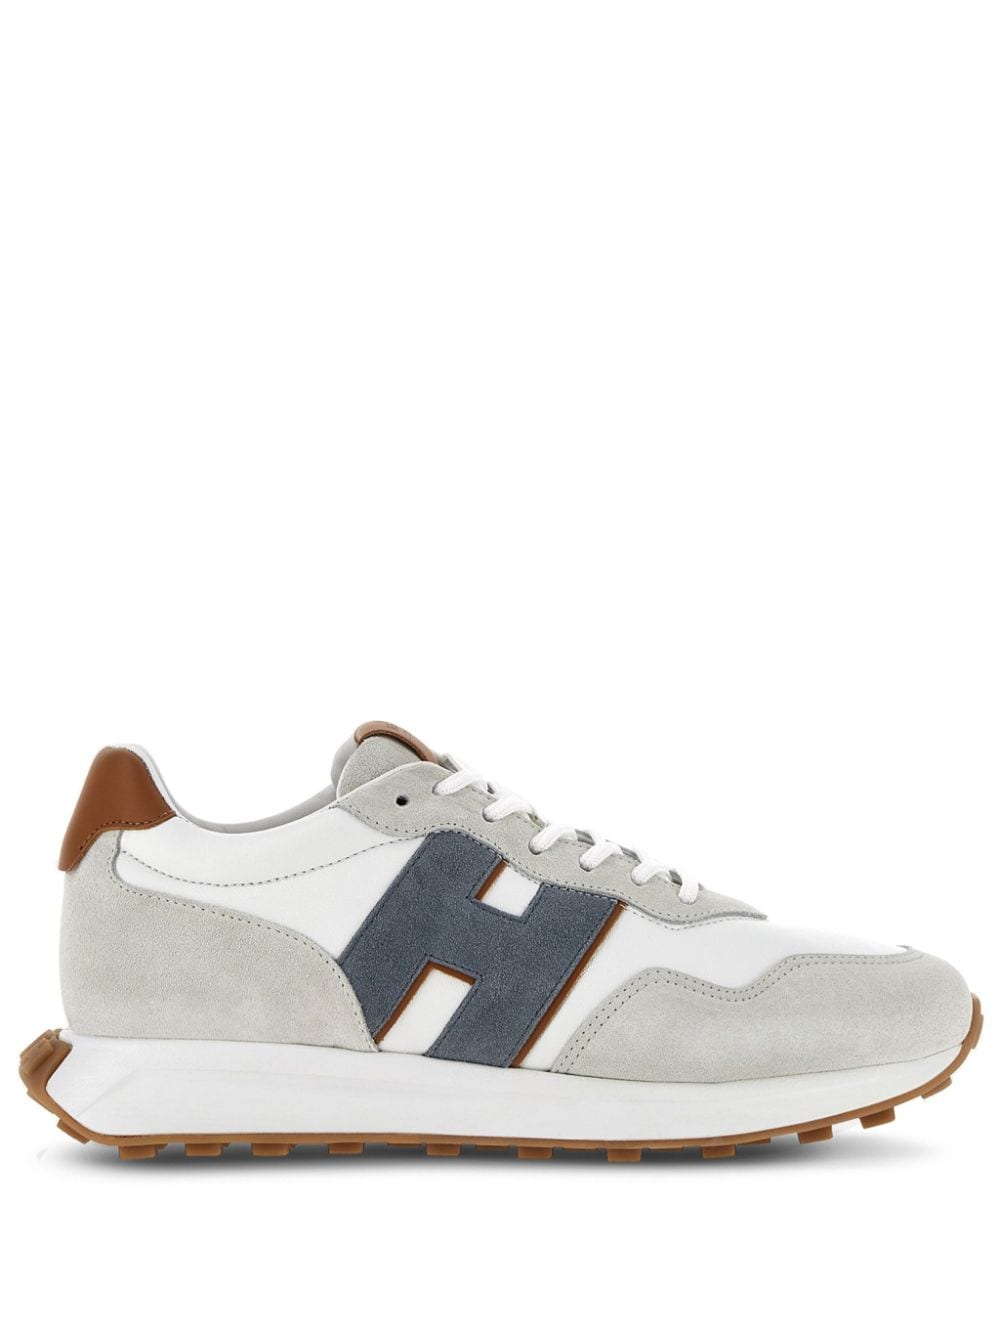 Hogan H601 lace-up suede sneakers - Grey von Hogan